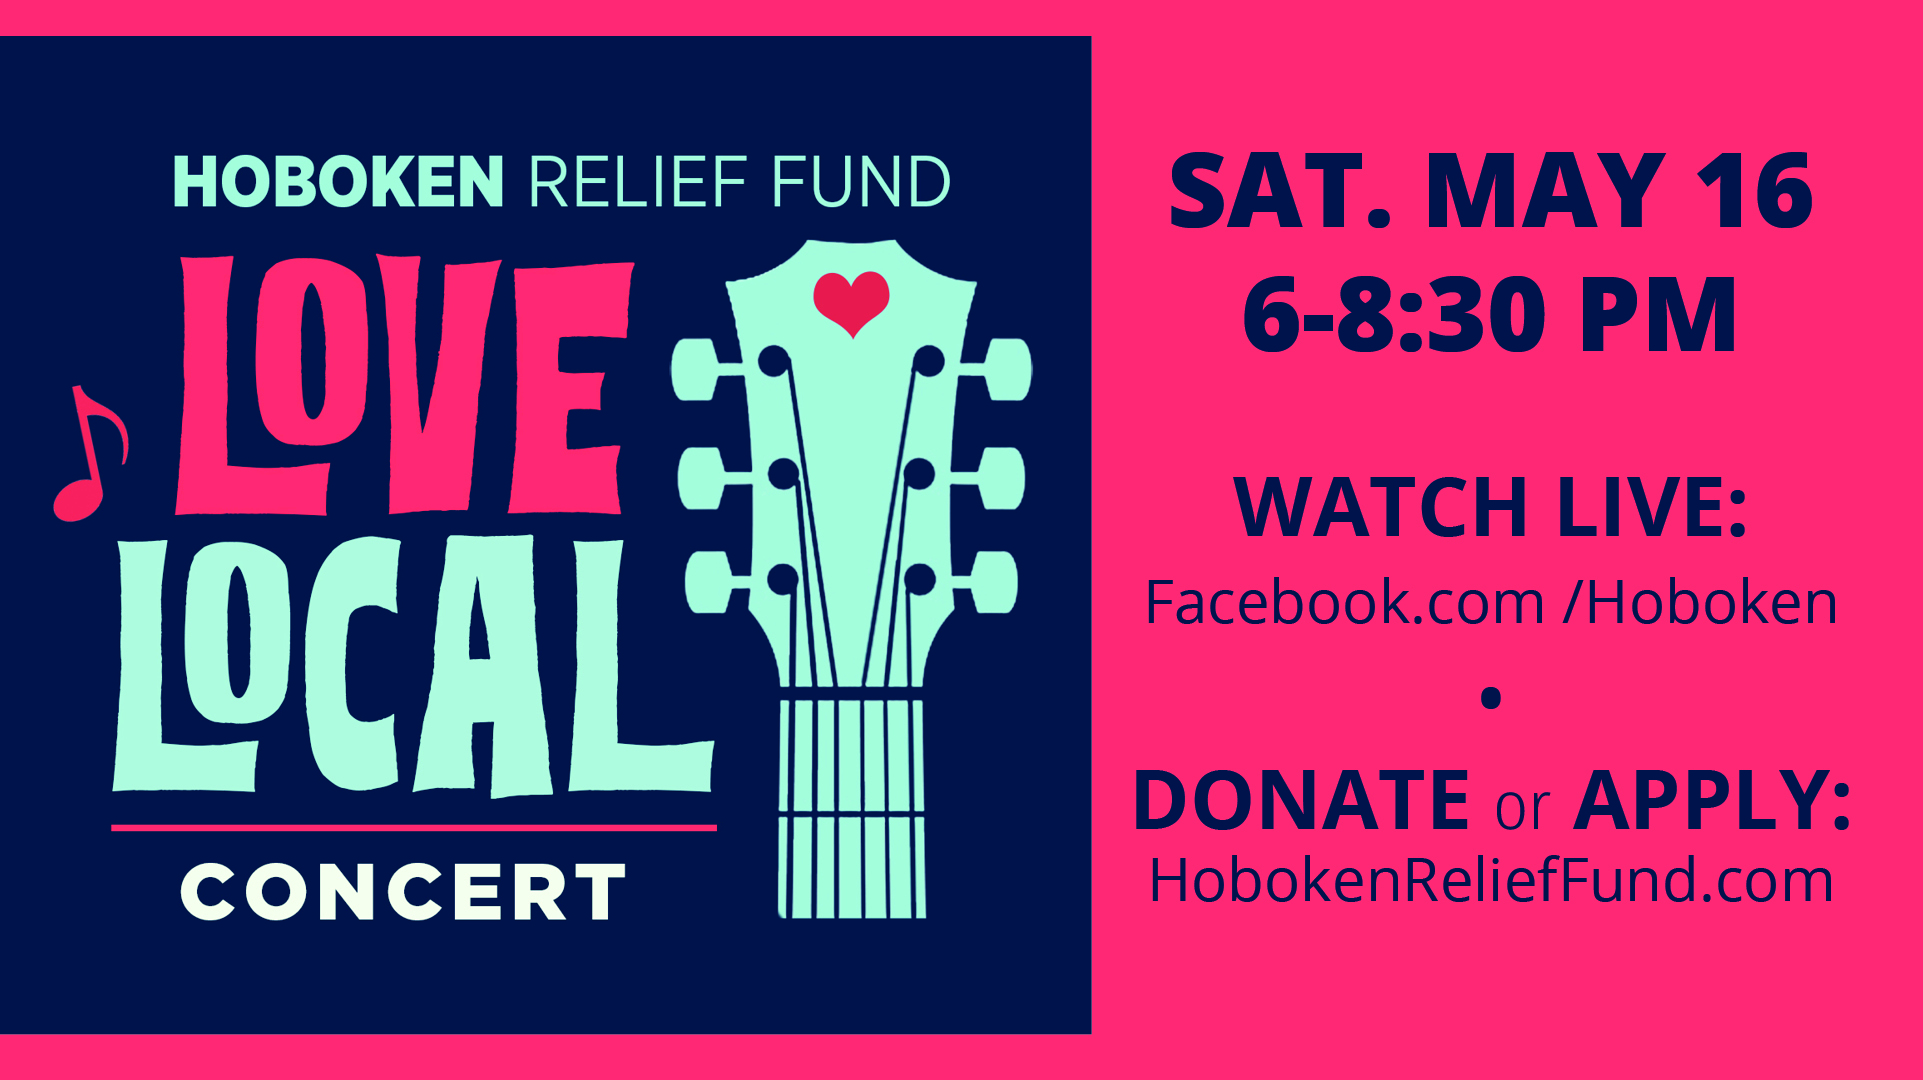 Hoboken Relief Fund Love Local Concert; Sat. May 16 6-8:30PM, Watch live: Facebook.com/Hoboken, Donate or Apply: HObokenrelieffund.com